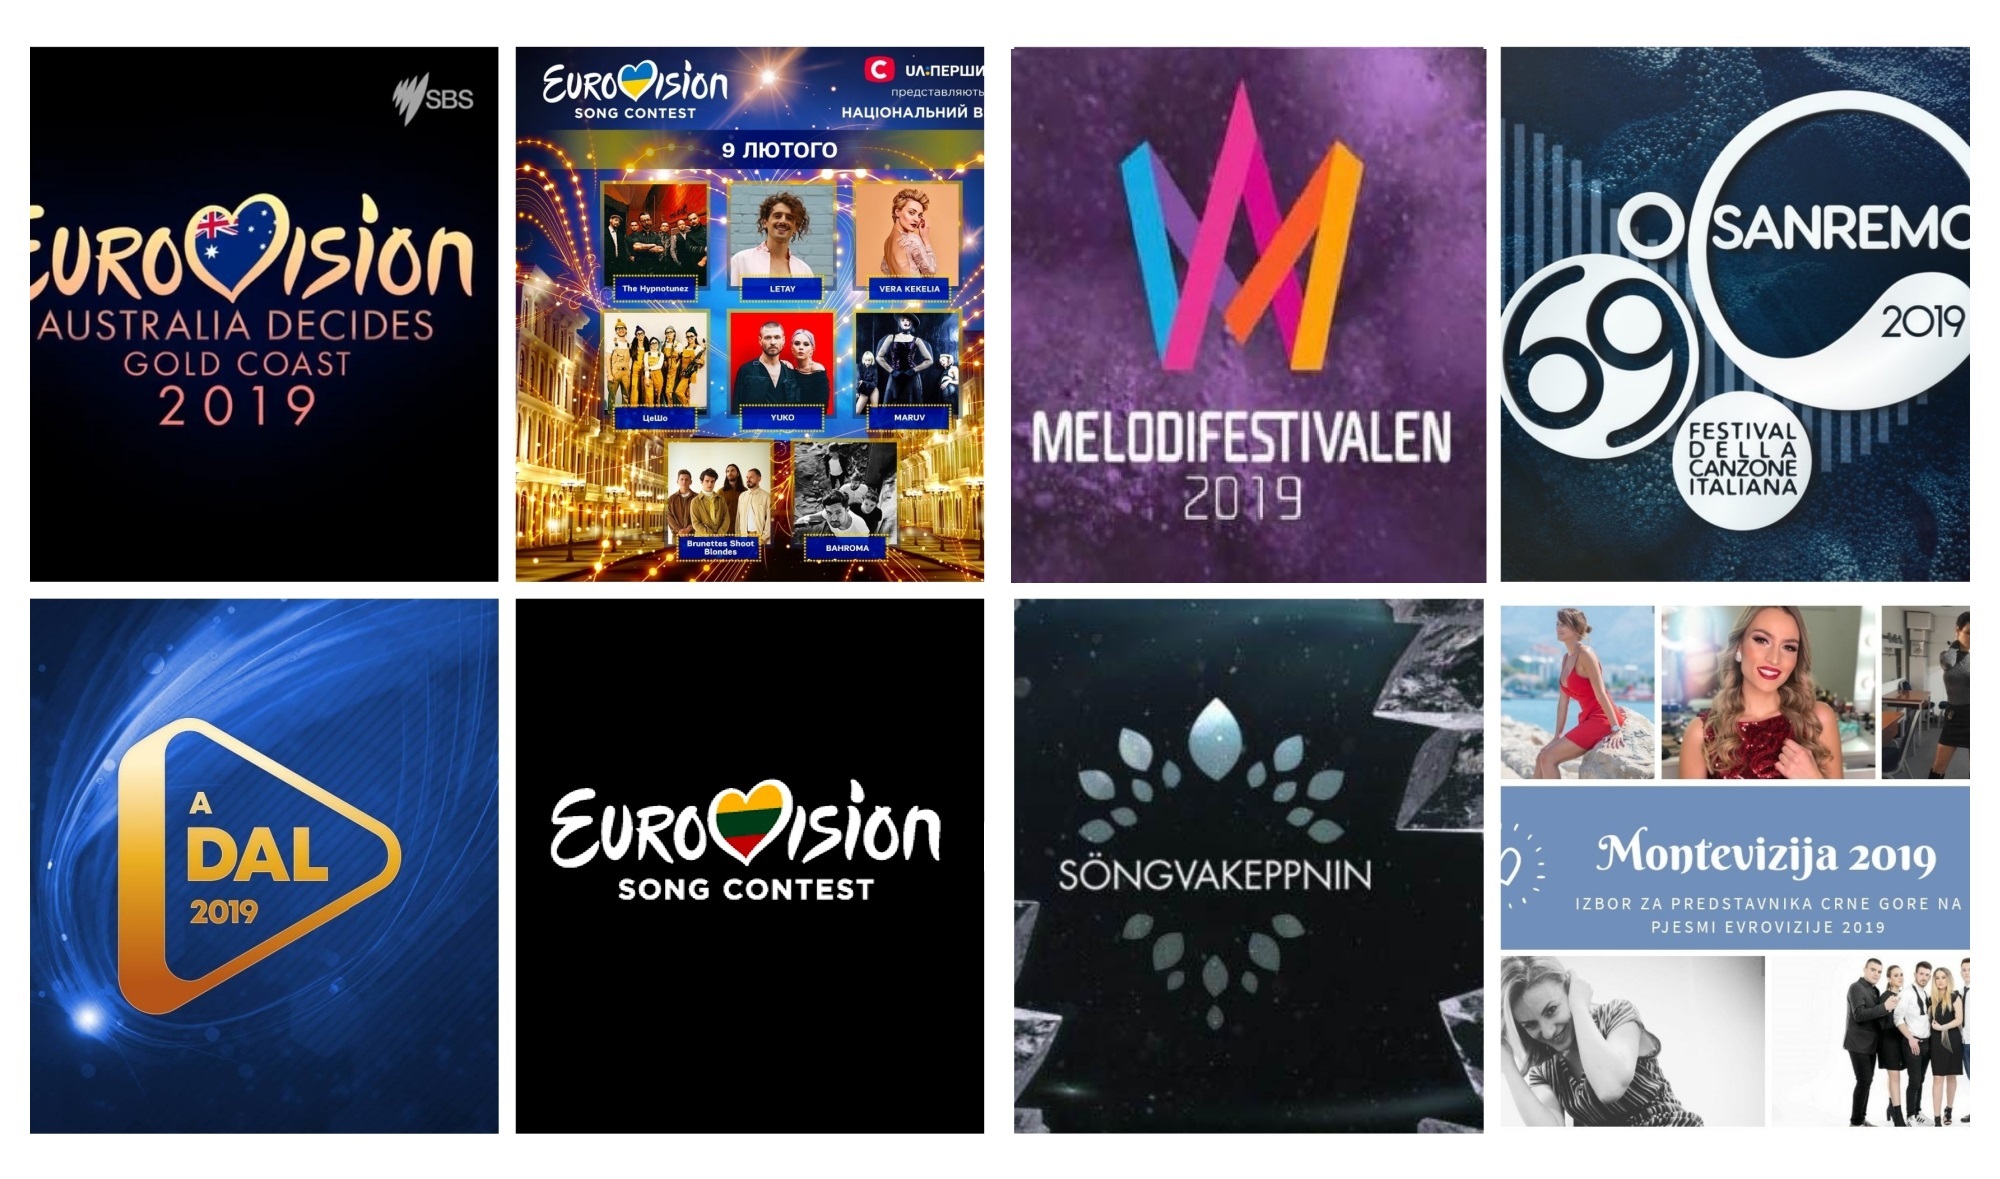  Novo ‘super sábado eurovisivo’ com oito eventos: saiba como acompanhar tudo